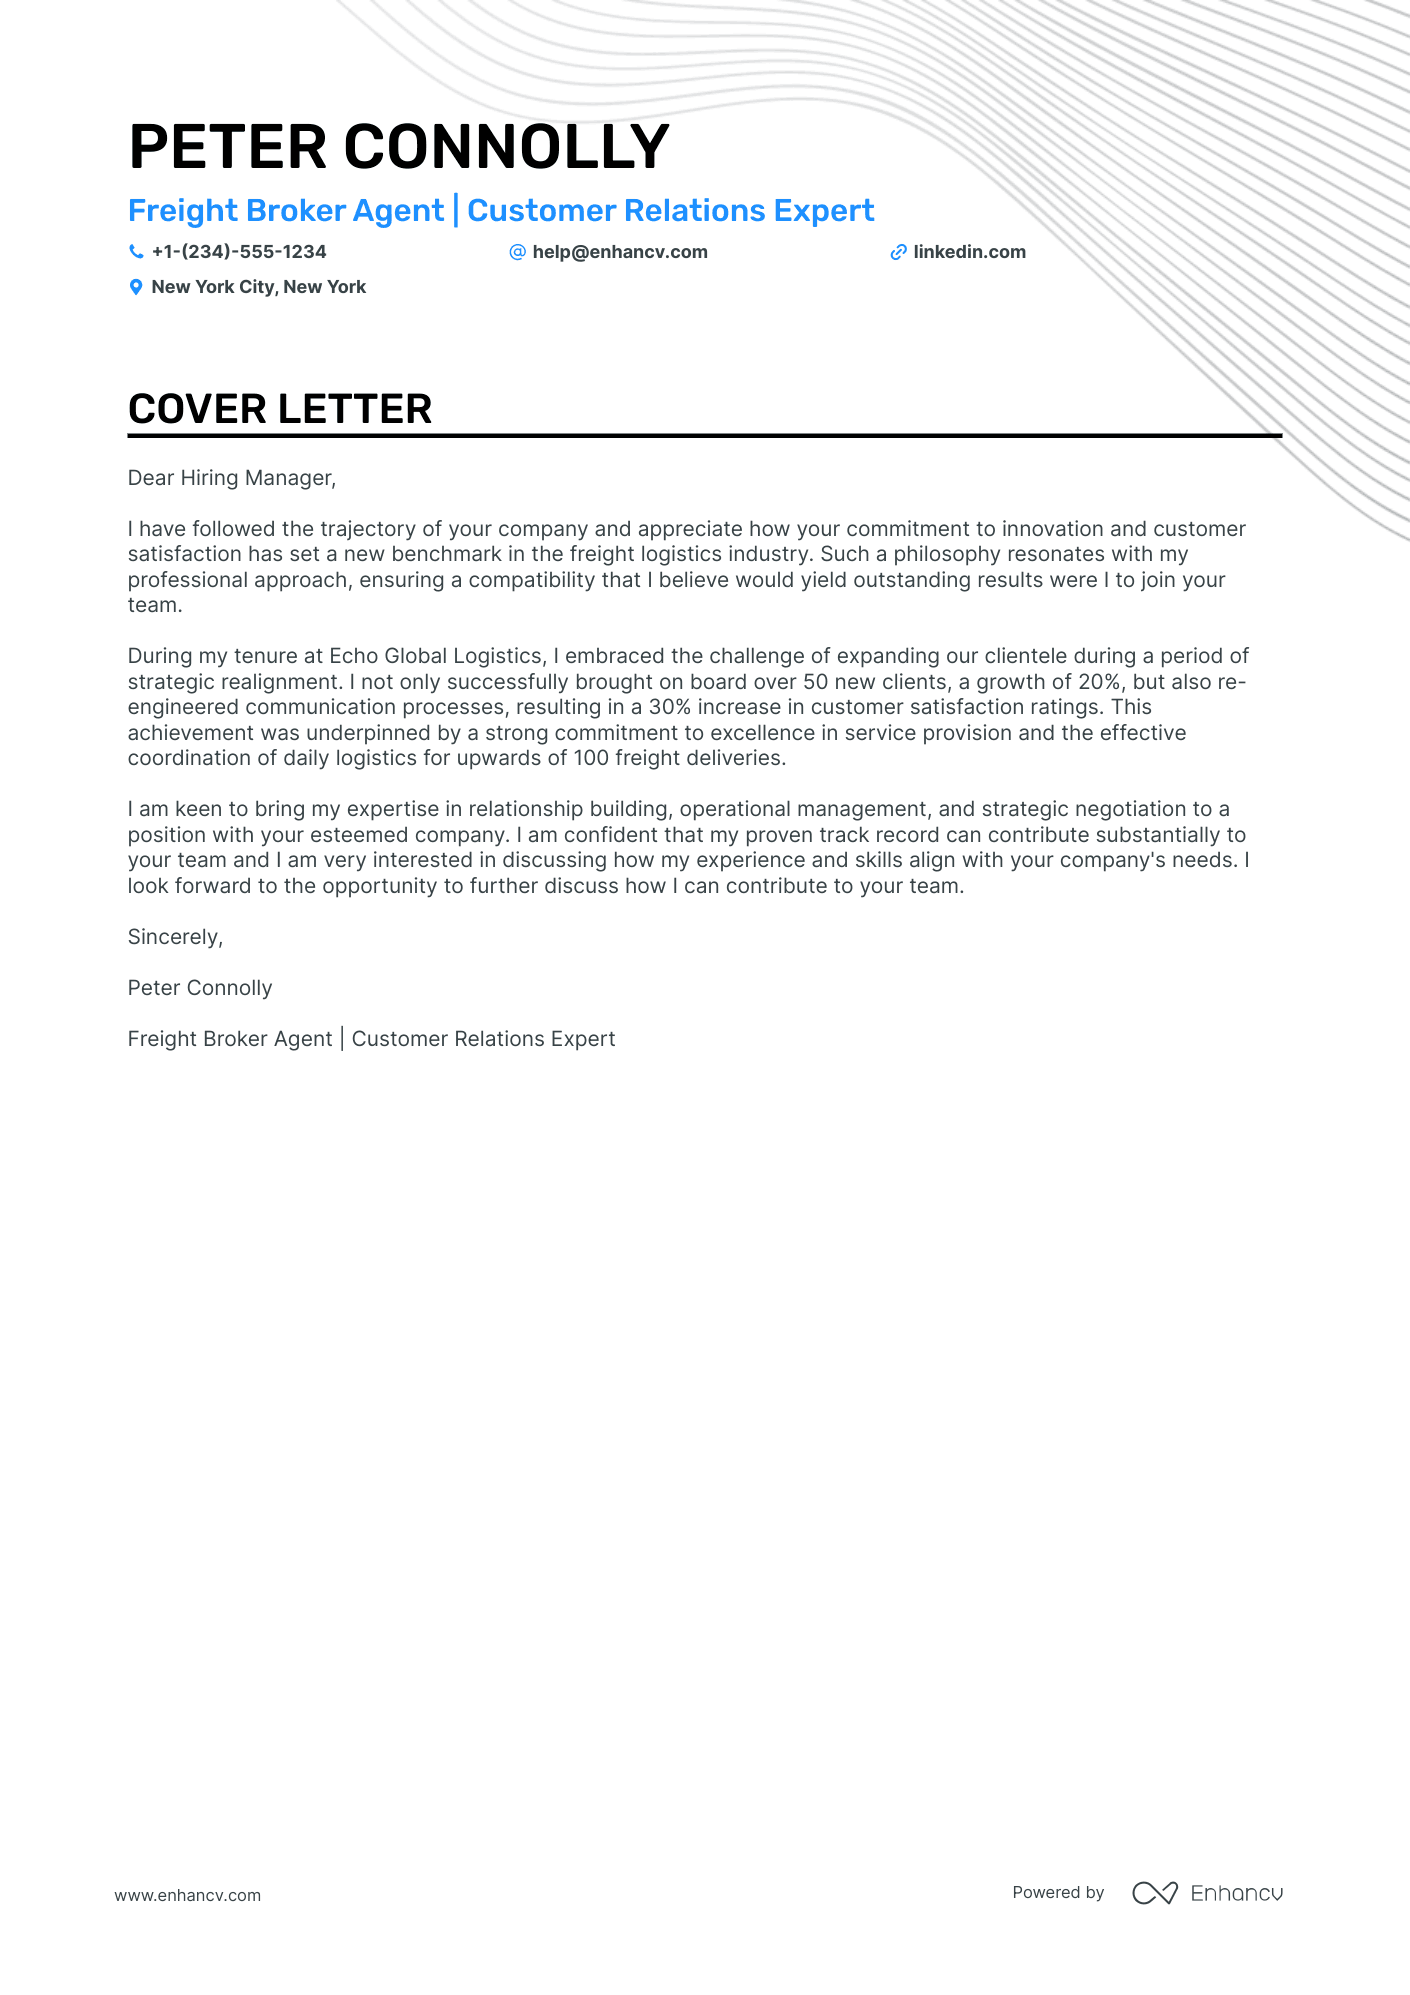 Freight Broker cover letter